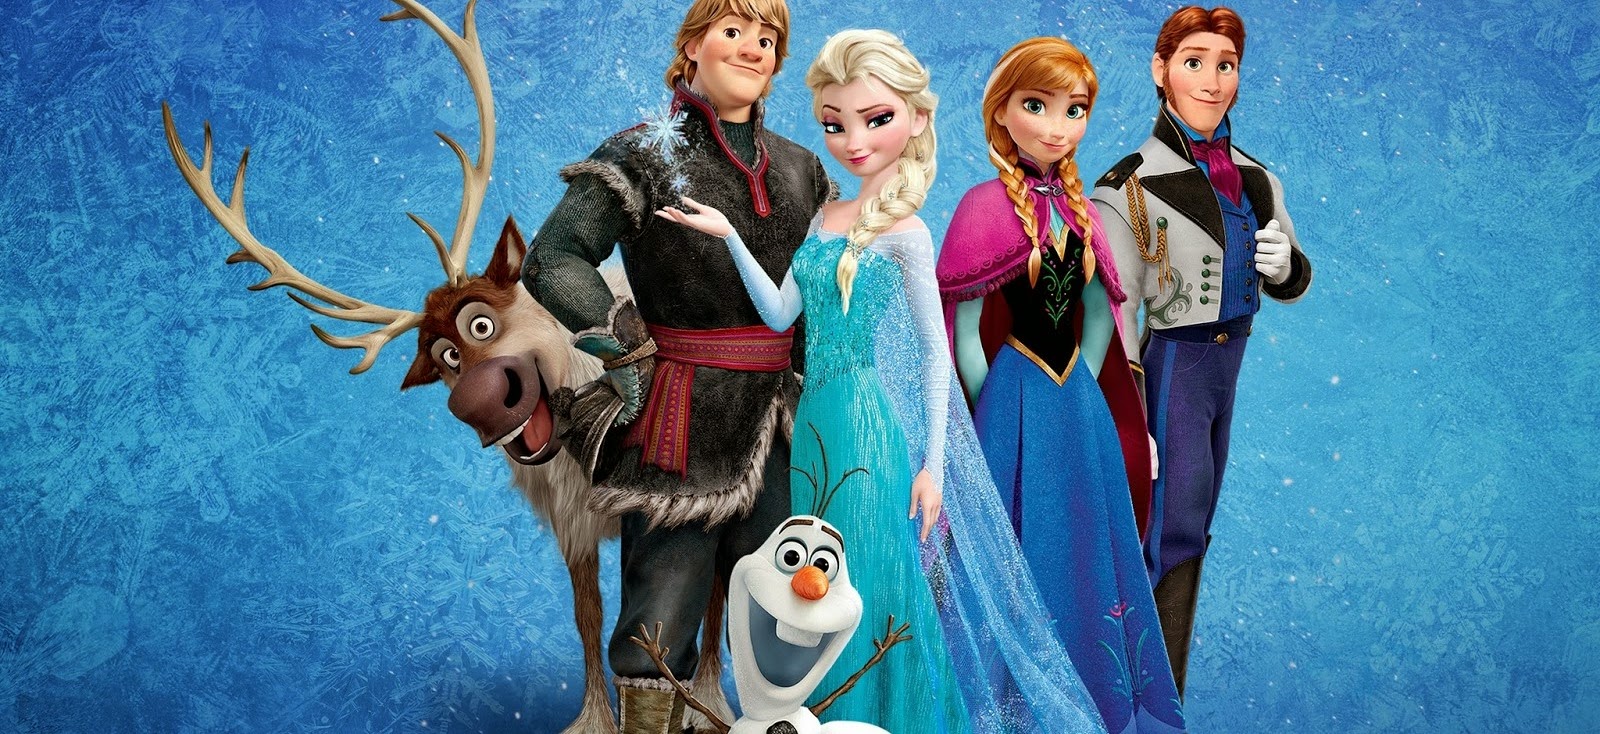 Frozen: Uma Aventura Congelante tem a maior bilheteria de animação de todos os tempos